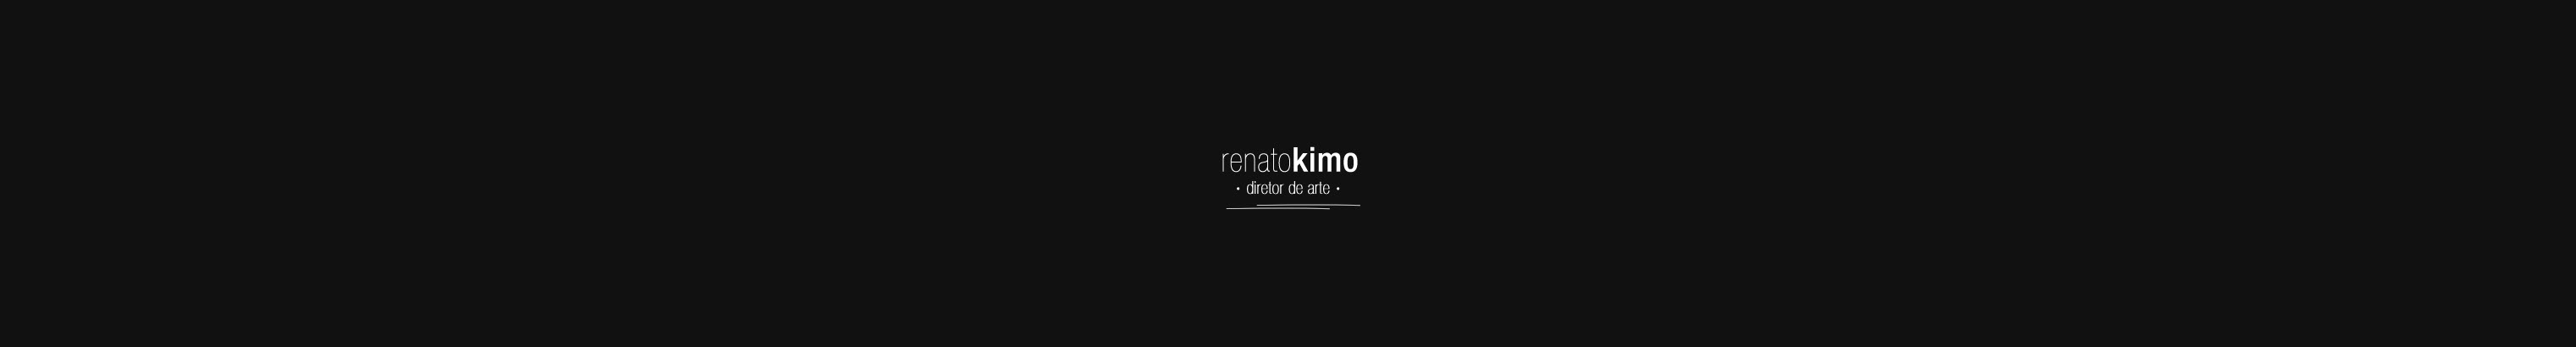 Banner de perfil de Renato Kimo